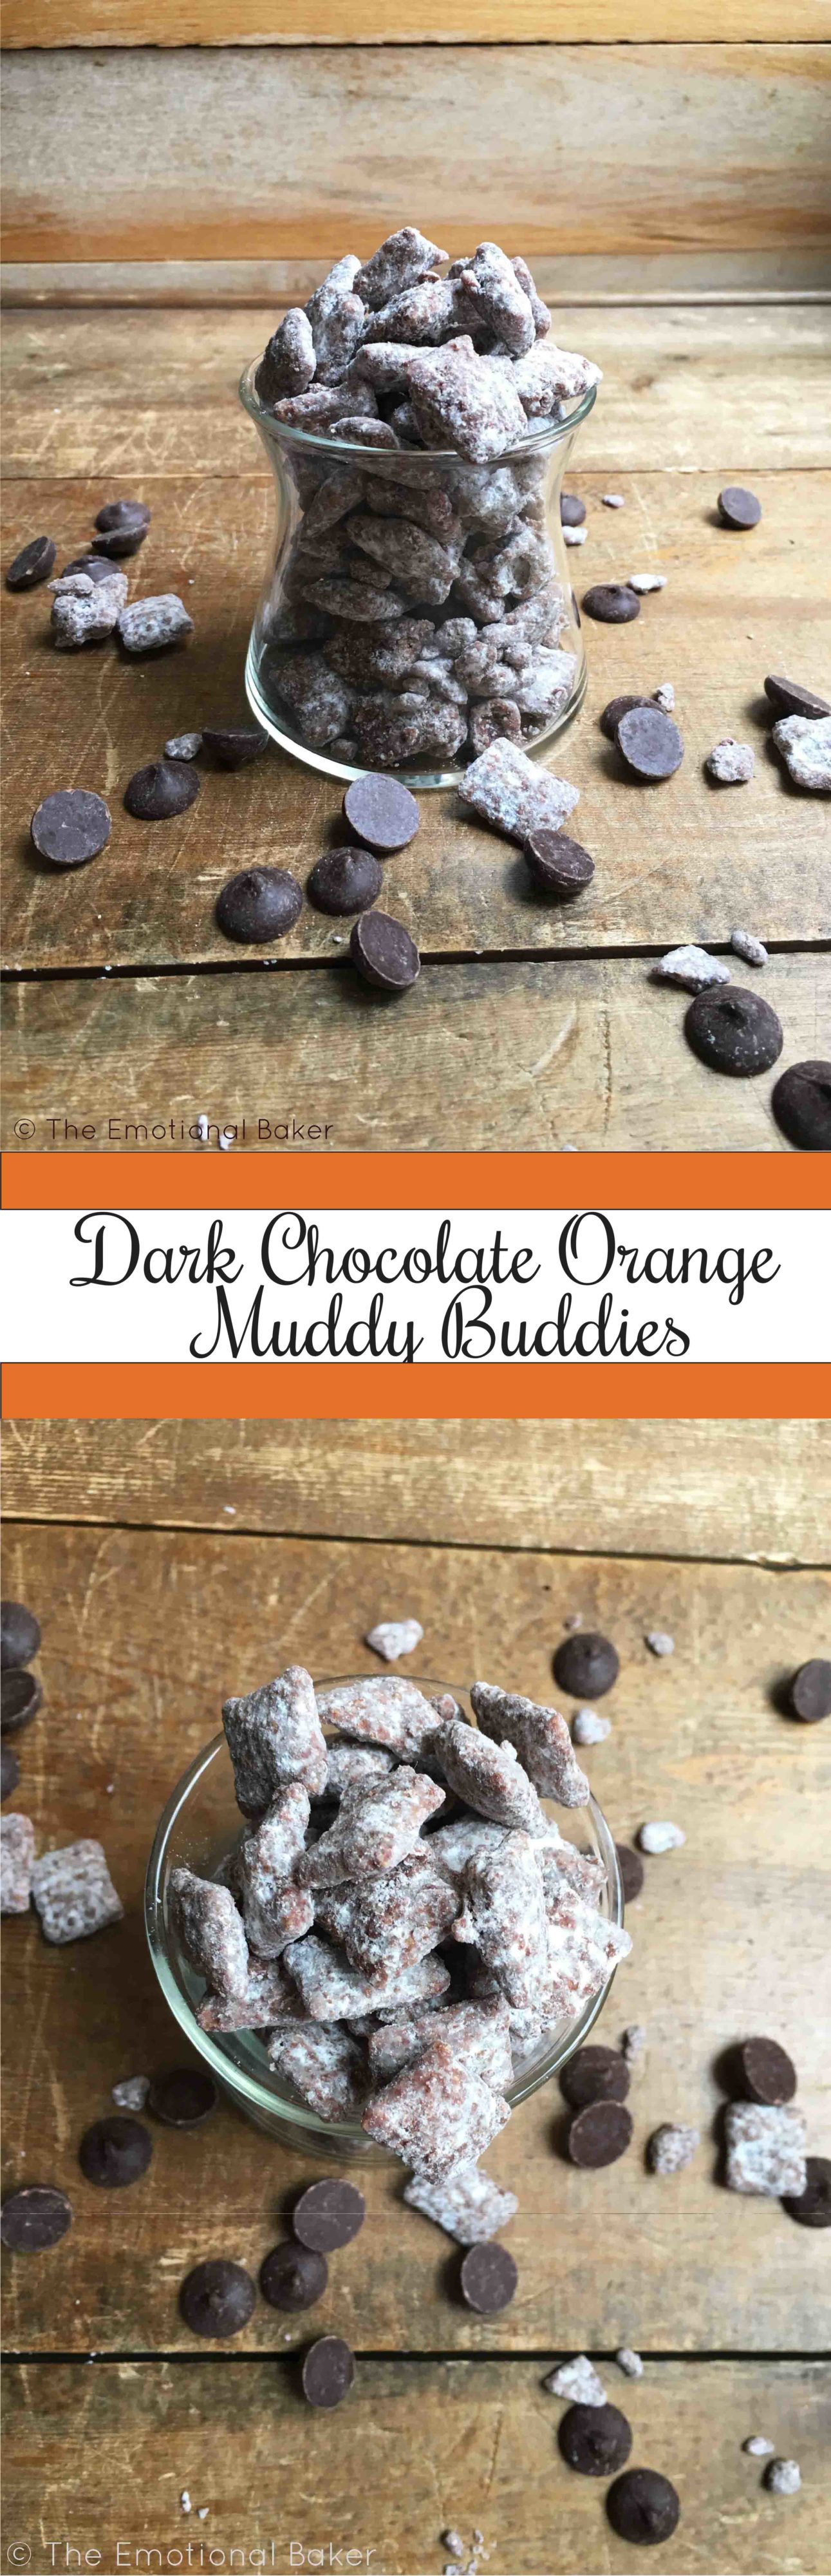 Dark Chocolate Orange Muddy Buddies